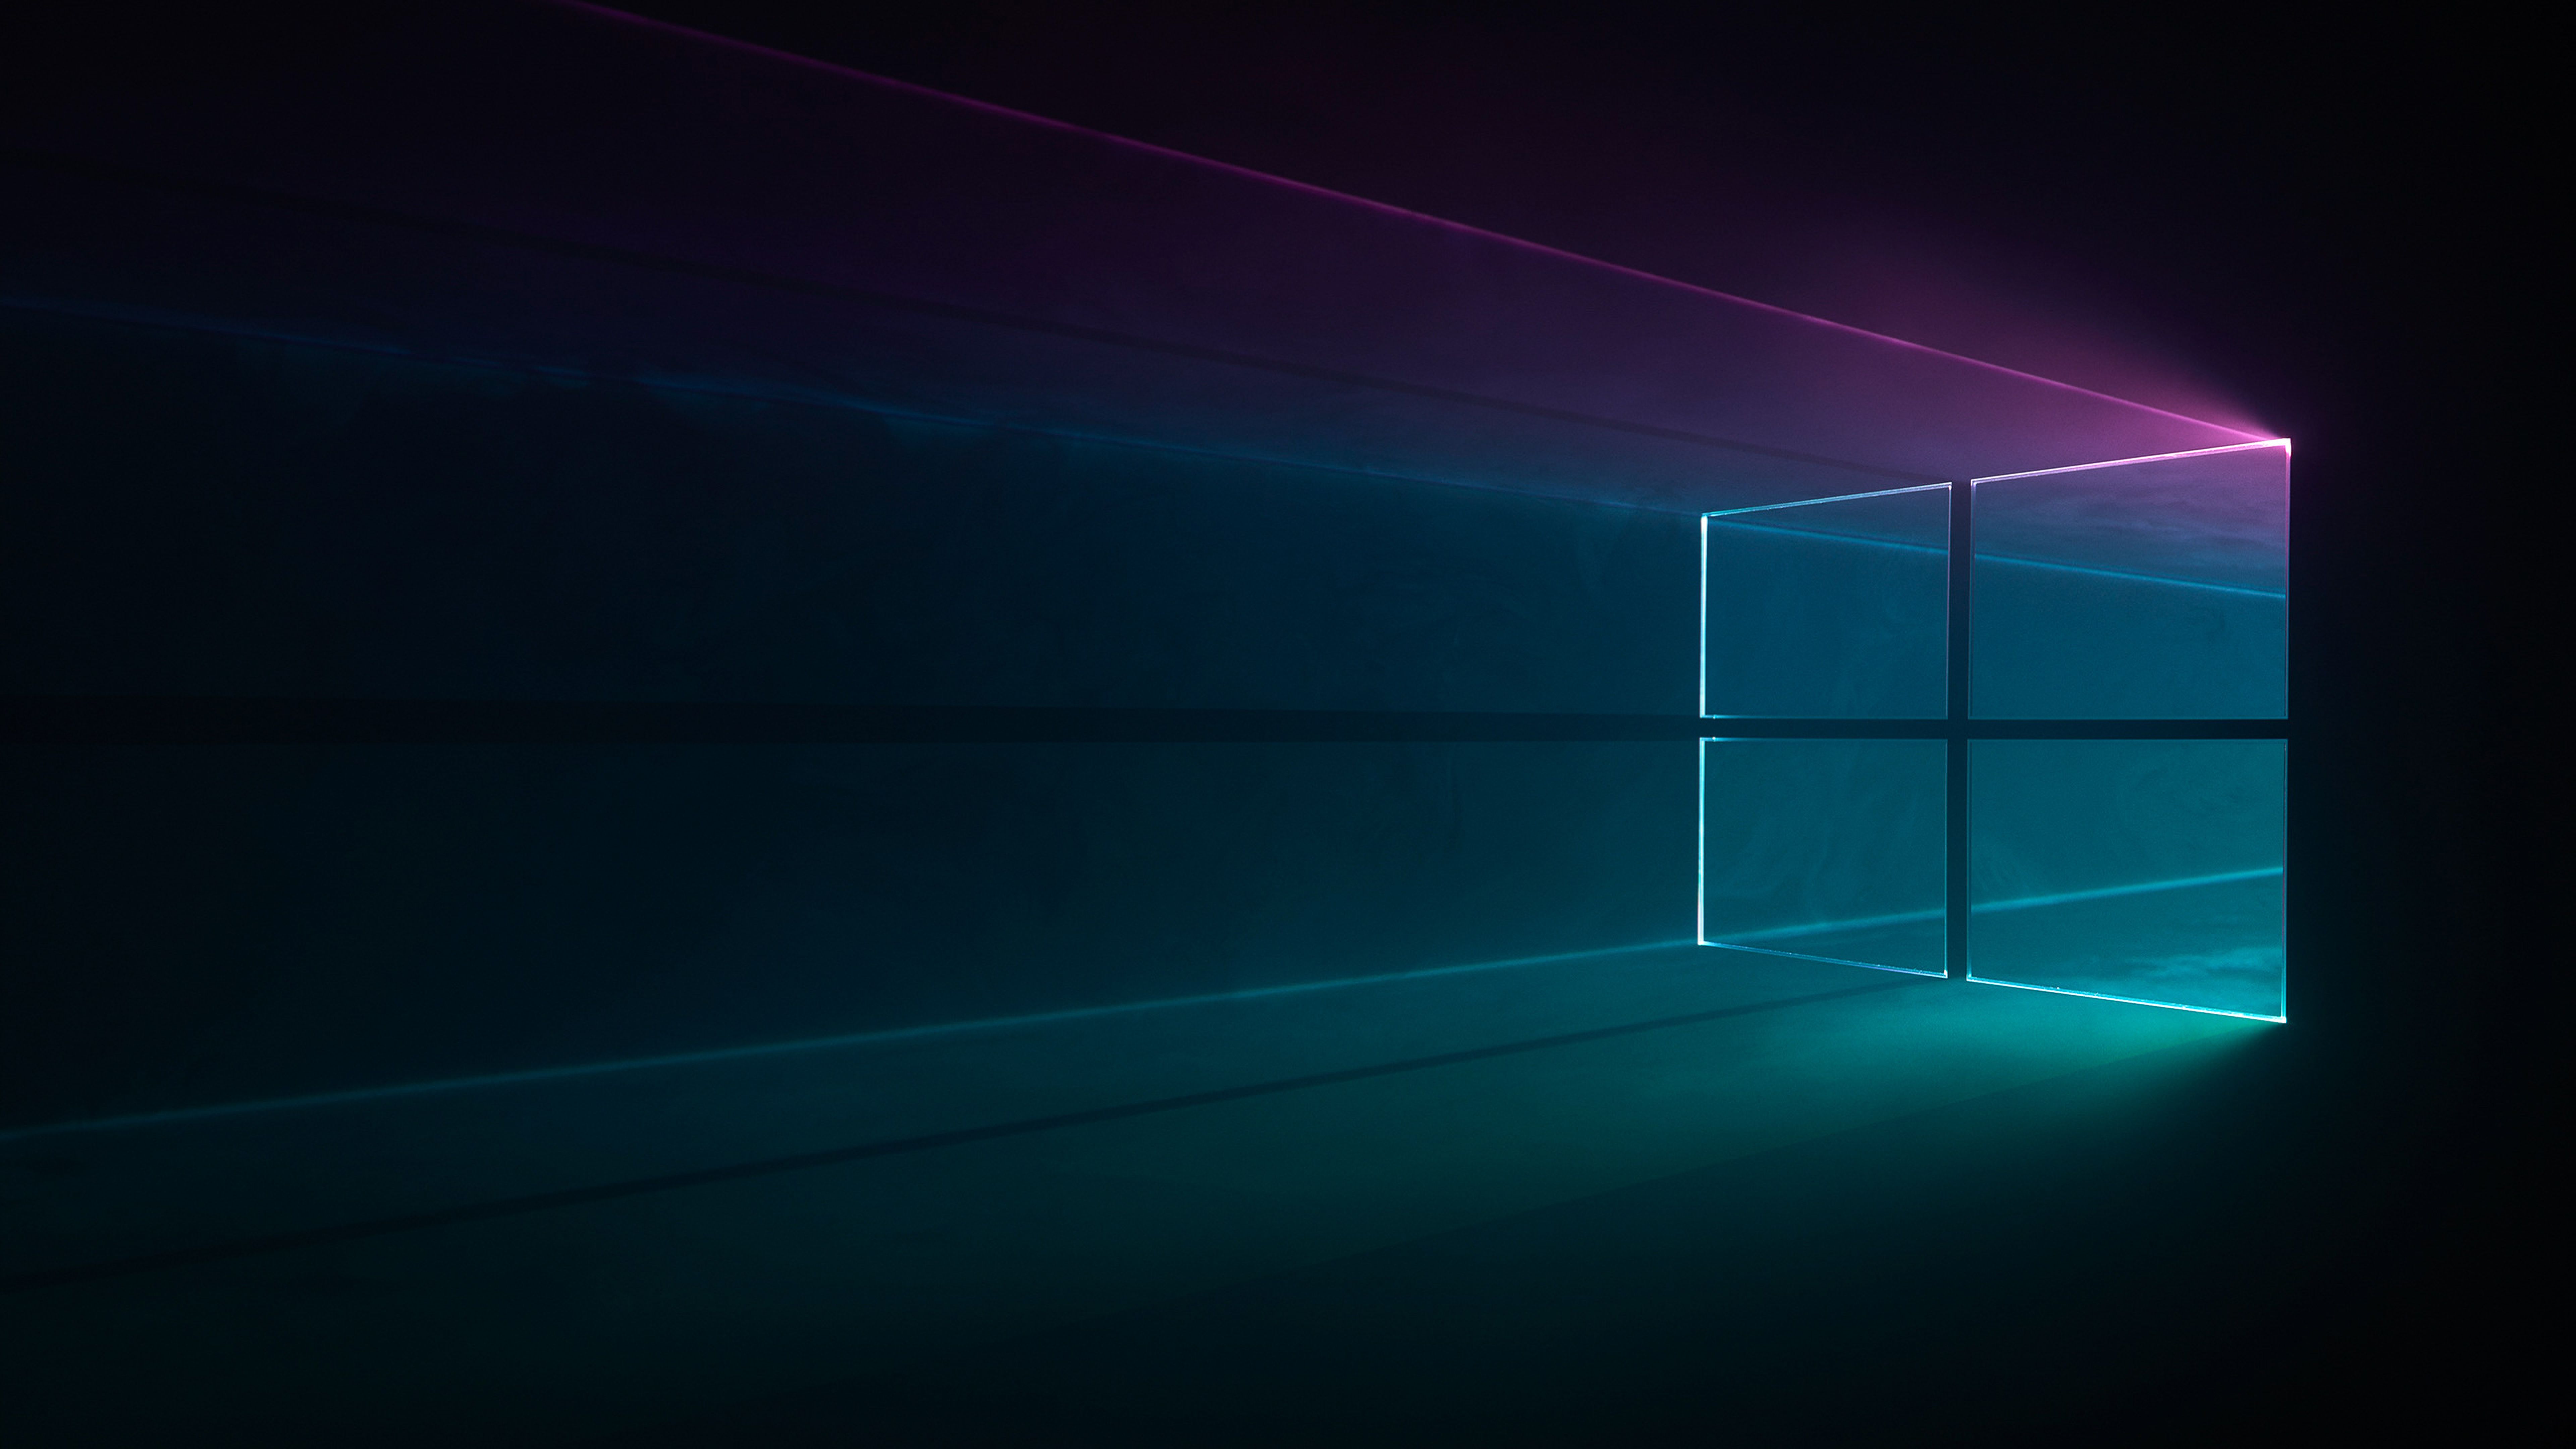 Bạn cần một bức hình nền chất lượng cao để trang hoàng cho máy tính Windows 10 của mình? Hãy tìm đến hình nền Windows 10 8k - một sự lựa chọn tuyệt vời cho những người yêu thích những hình ảnh sống động, sắc nét và chất lượng đỉnh cao.